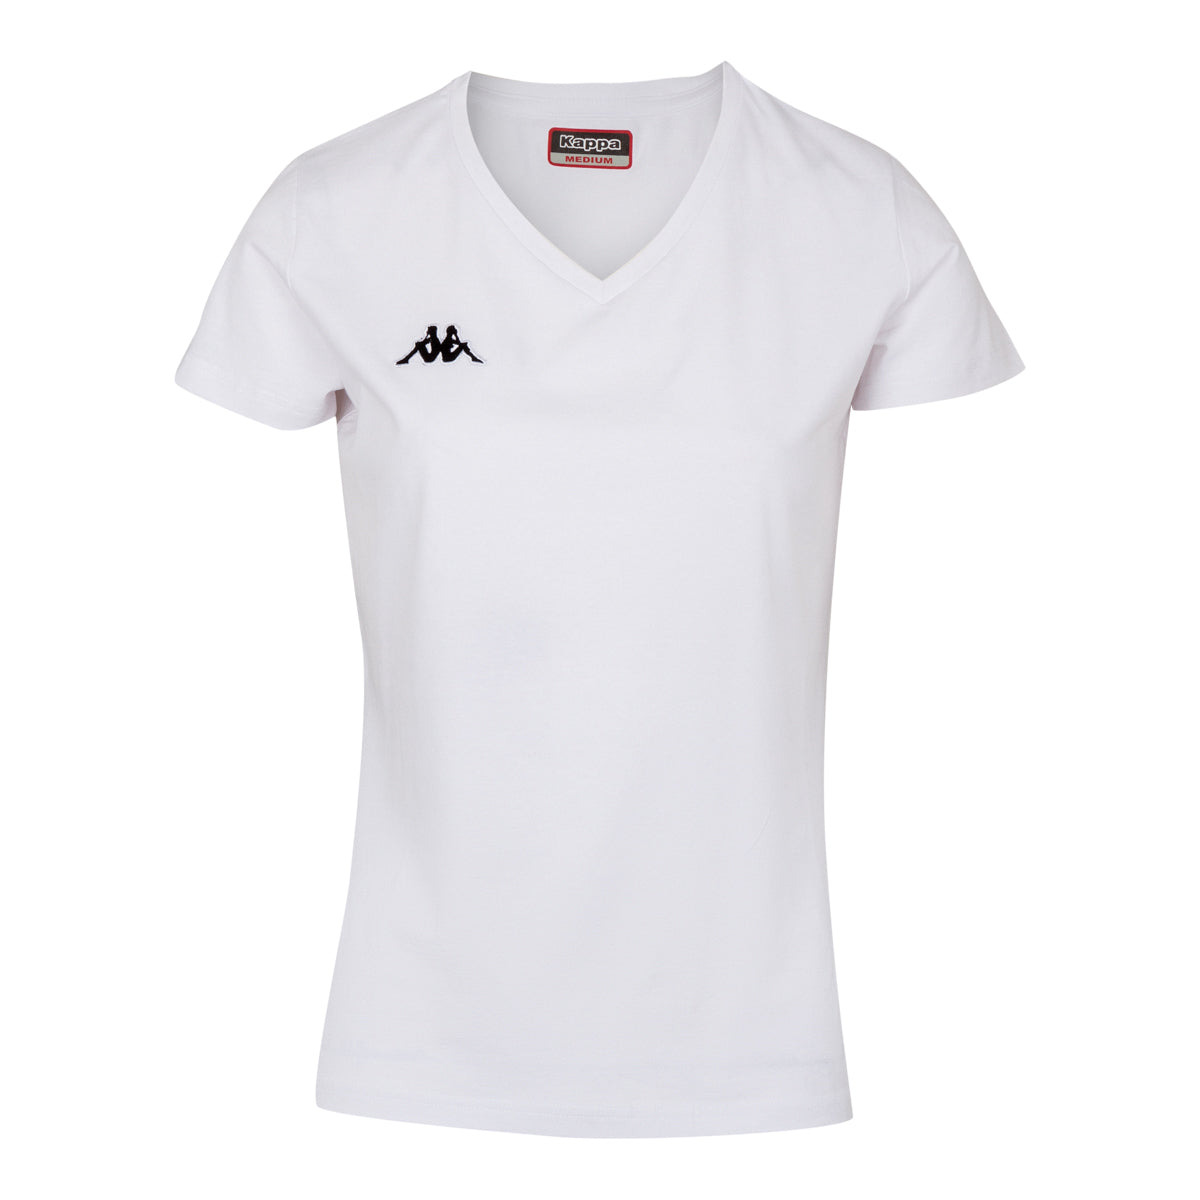 T-shirt Lifestyle Meleti Blanc Femme - Image 1